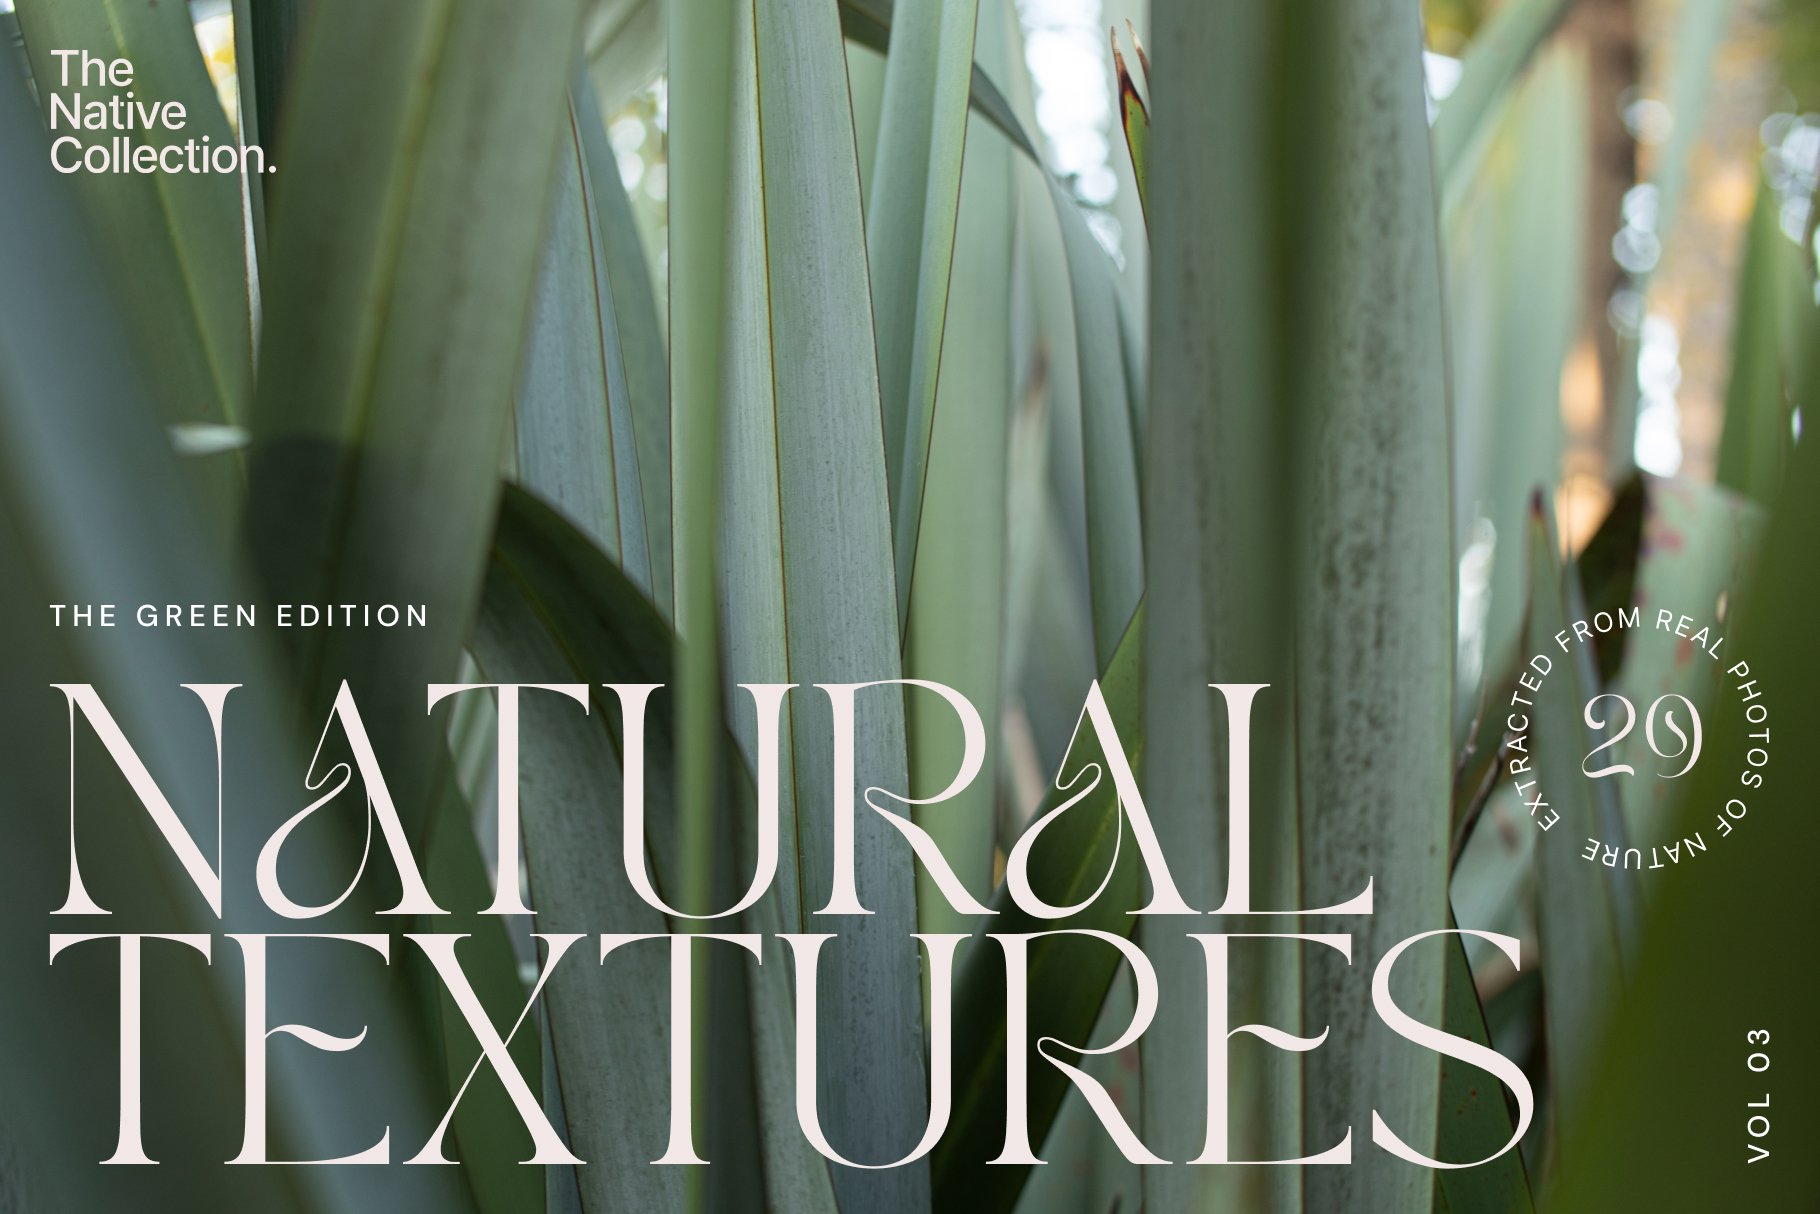 一组精美新西兰本土植物自然植物设计纹理-绿色版v03 Natural textures – Green edition v03 , 第1张